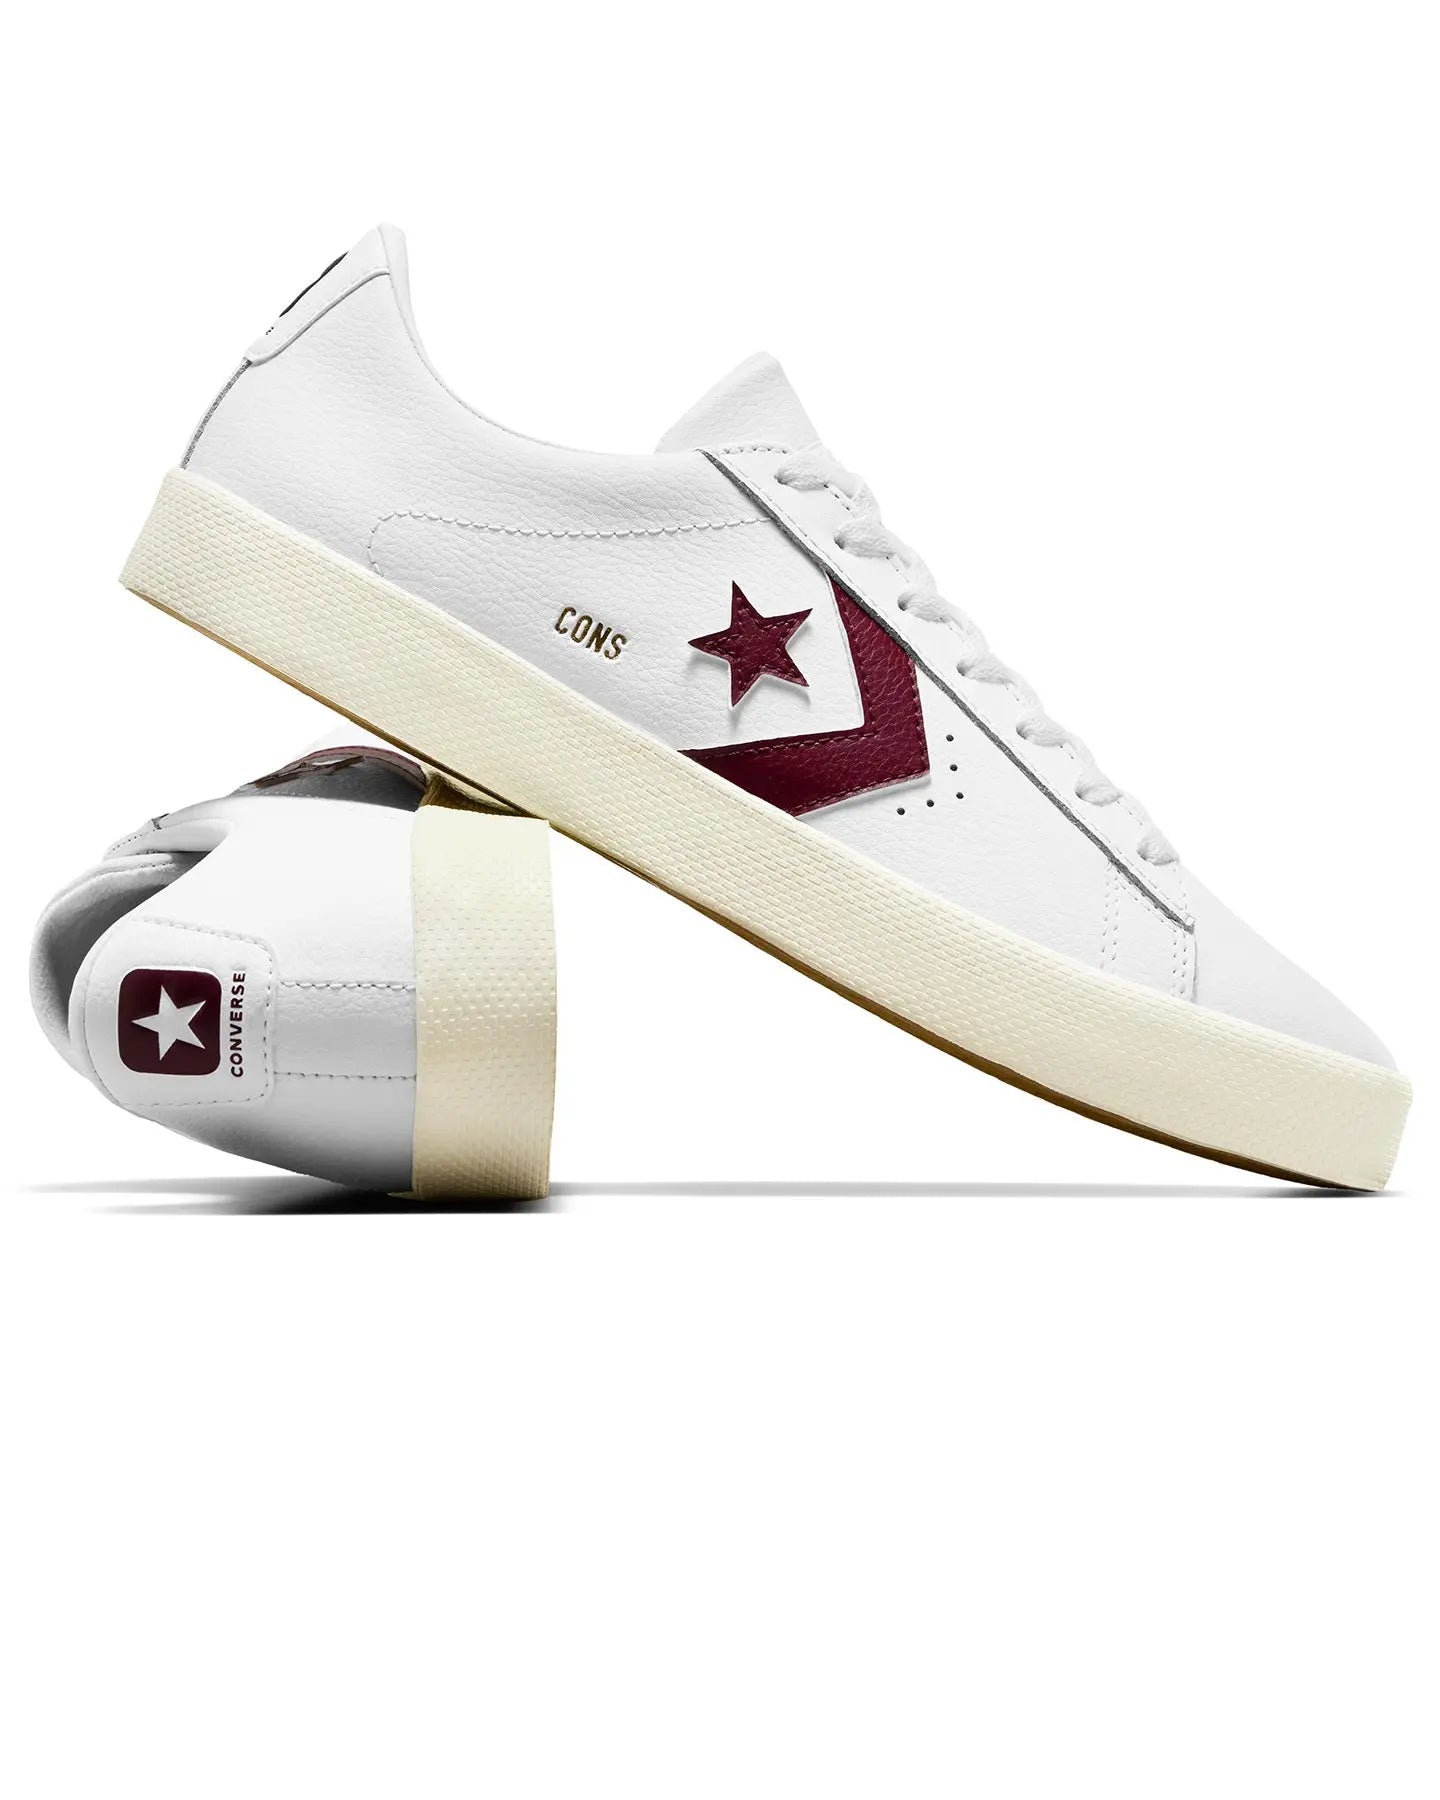 Cons PL Vulc Low - White / Deep Bordeaux / Egret Footwear